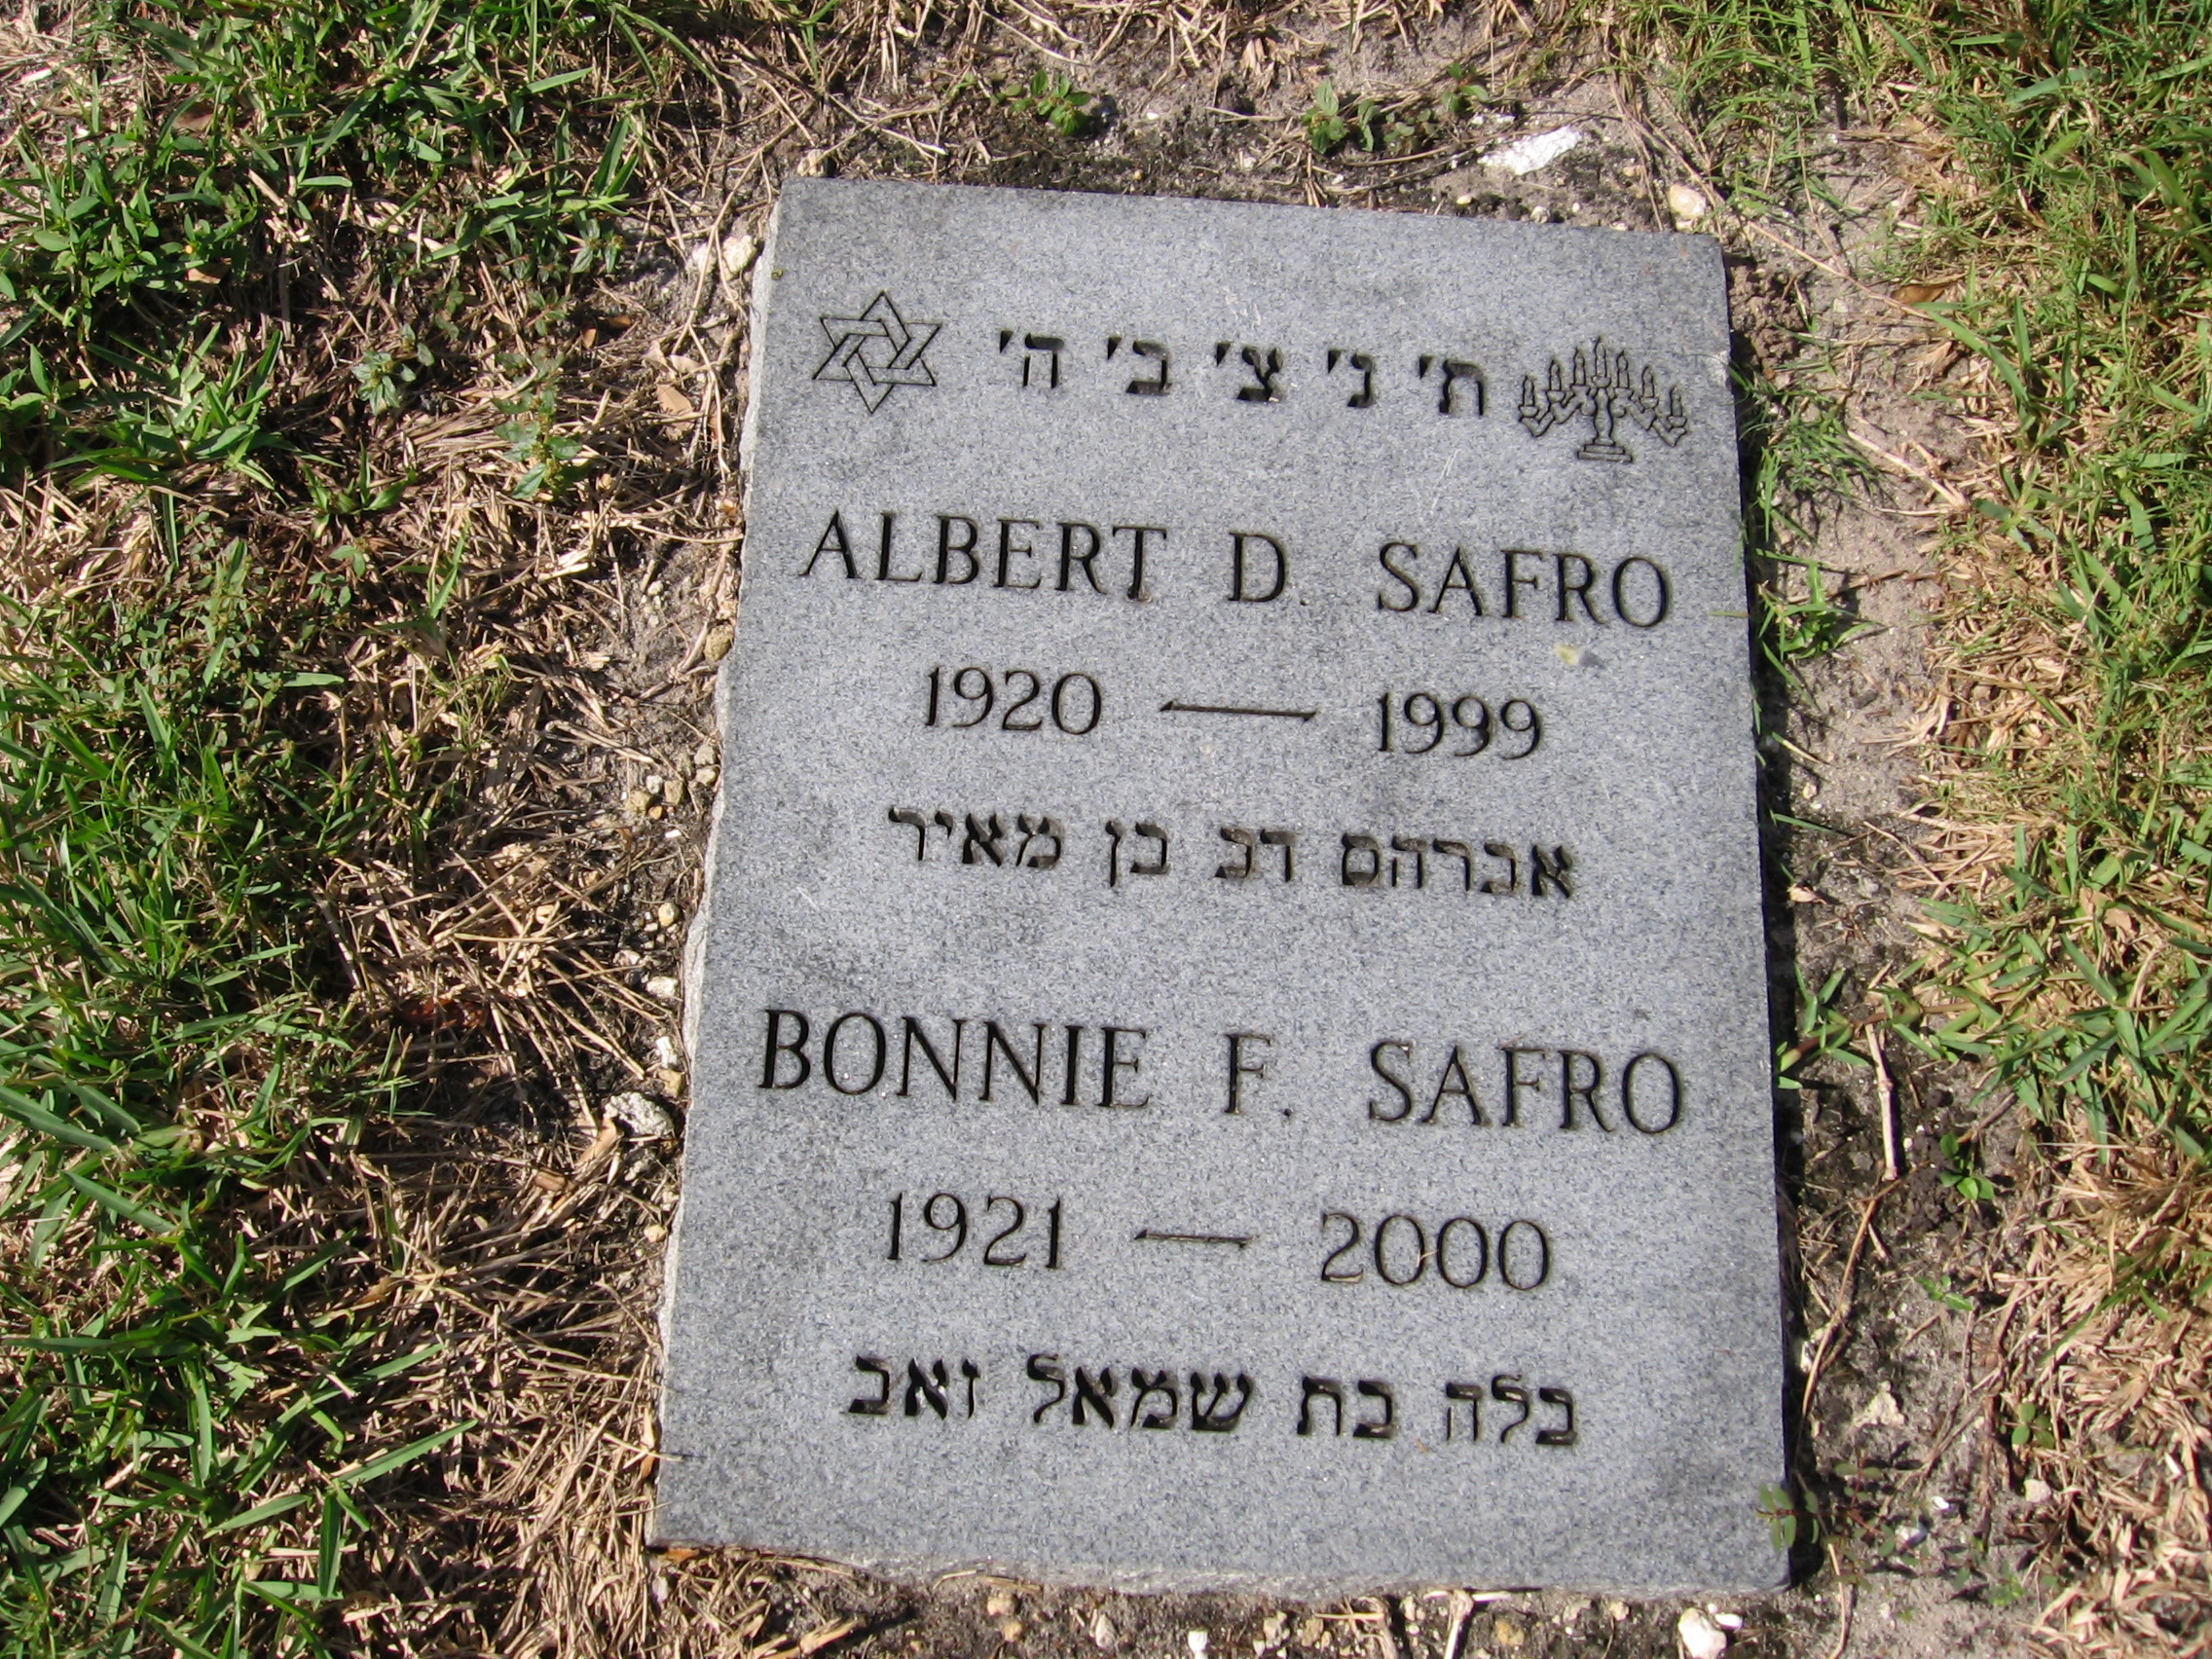 Albert D Safro